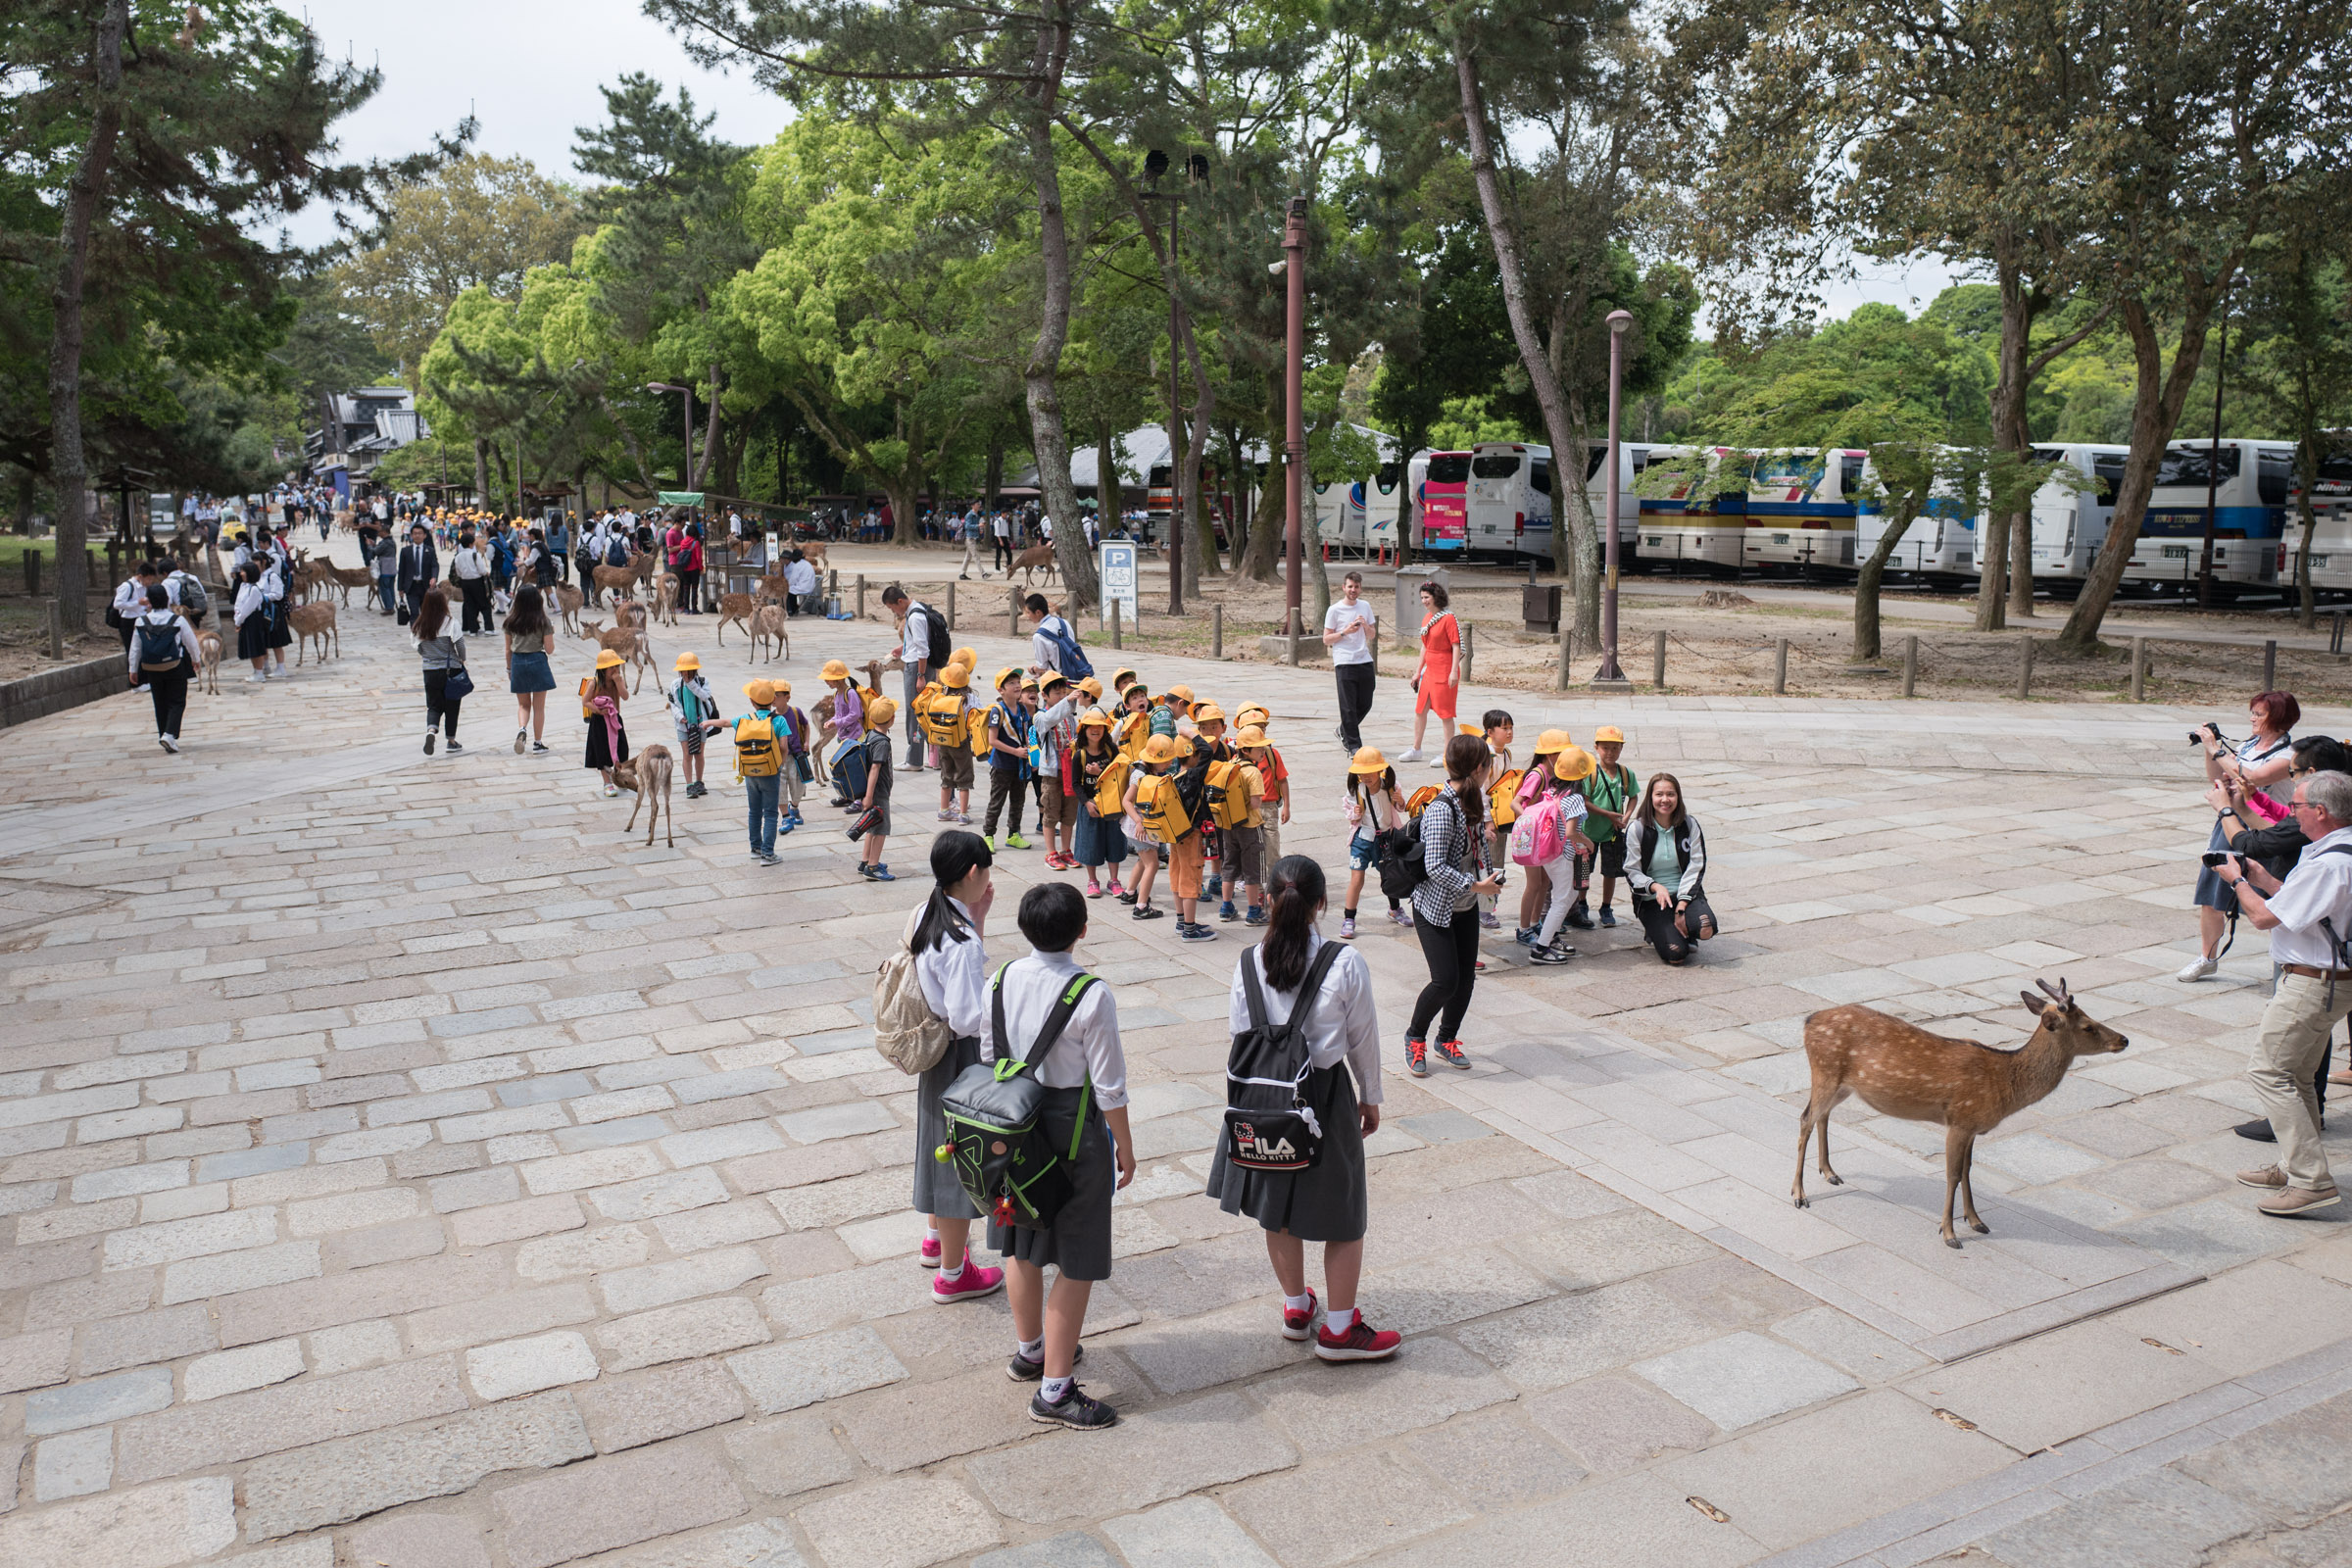 School children from Nara in their uniforms